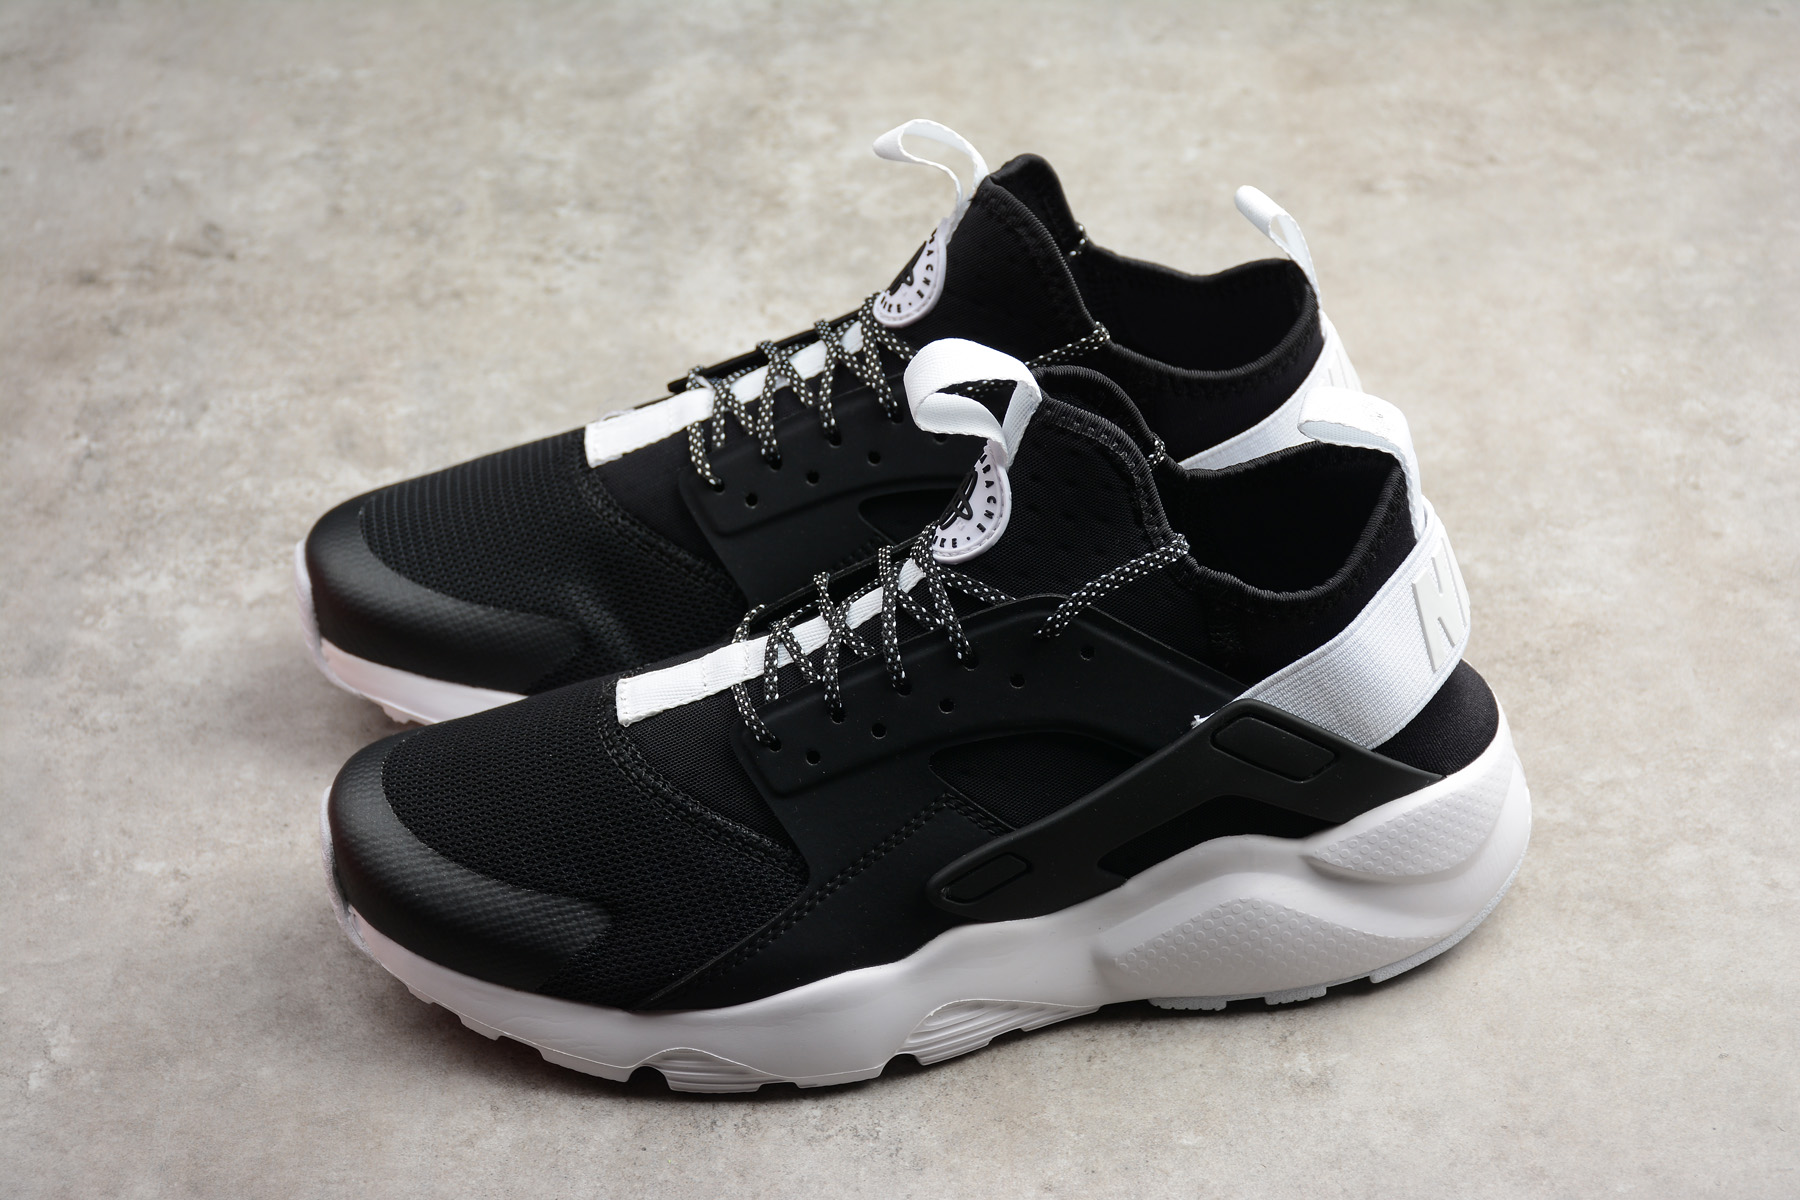 Nike Air Huarache Run Ultra Black White 819685-018 – Men Air Shoes